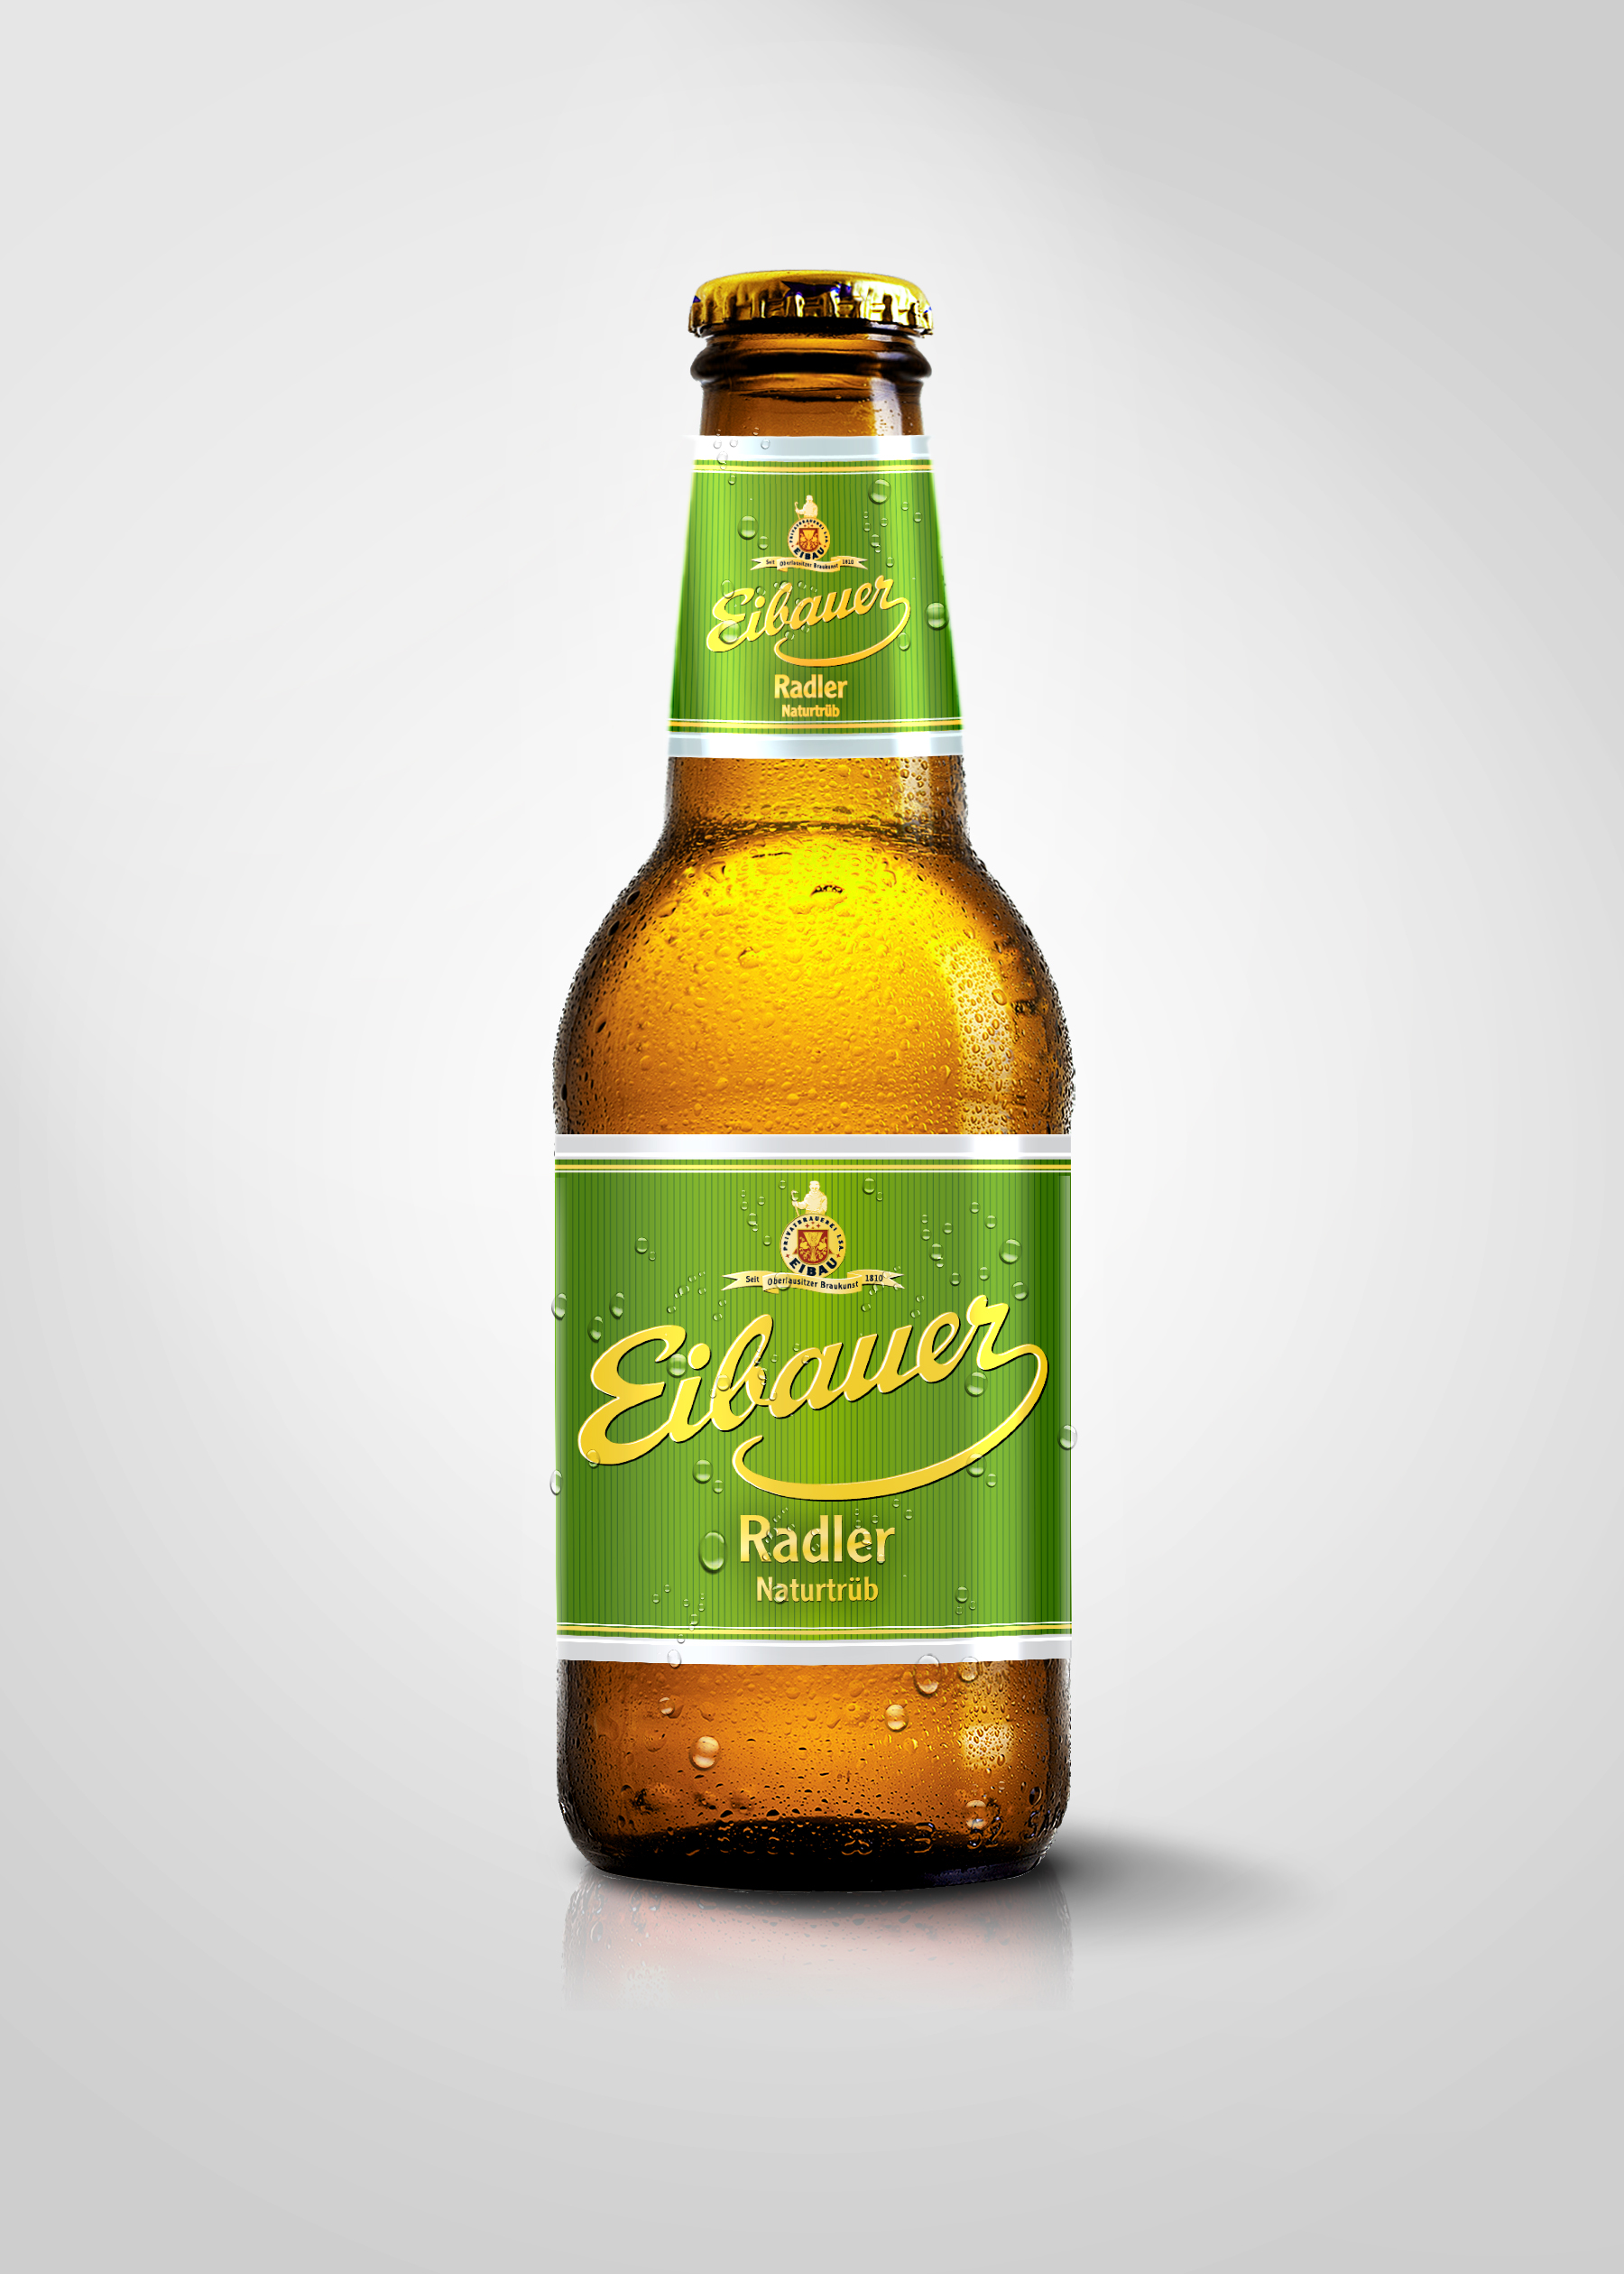 Bia Trái Cây Eibauer - Radler Naturtub 2.5 độ - Bia Thây Tu Eibauer - Bia Đức Nhập Khẩu Chính Hãng Chai 250ml